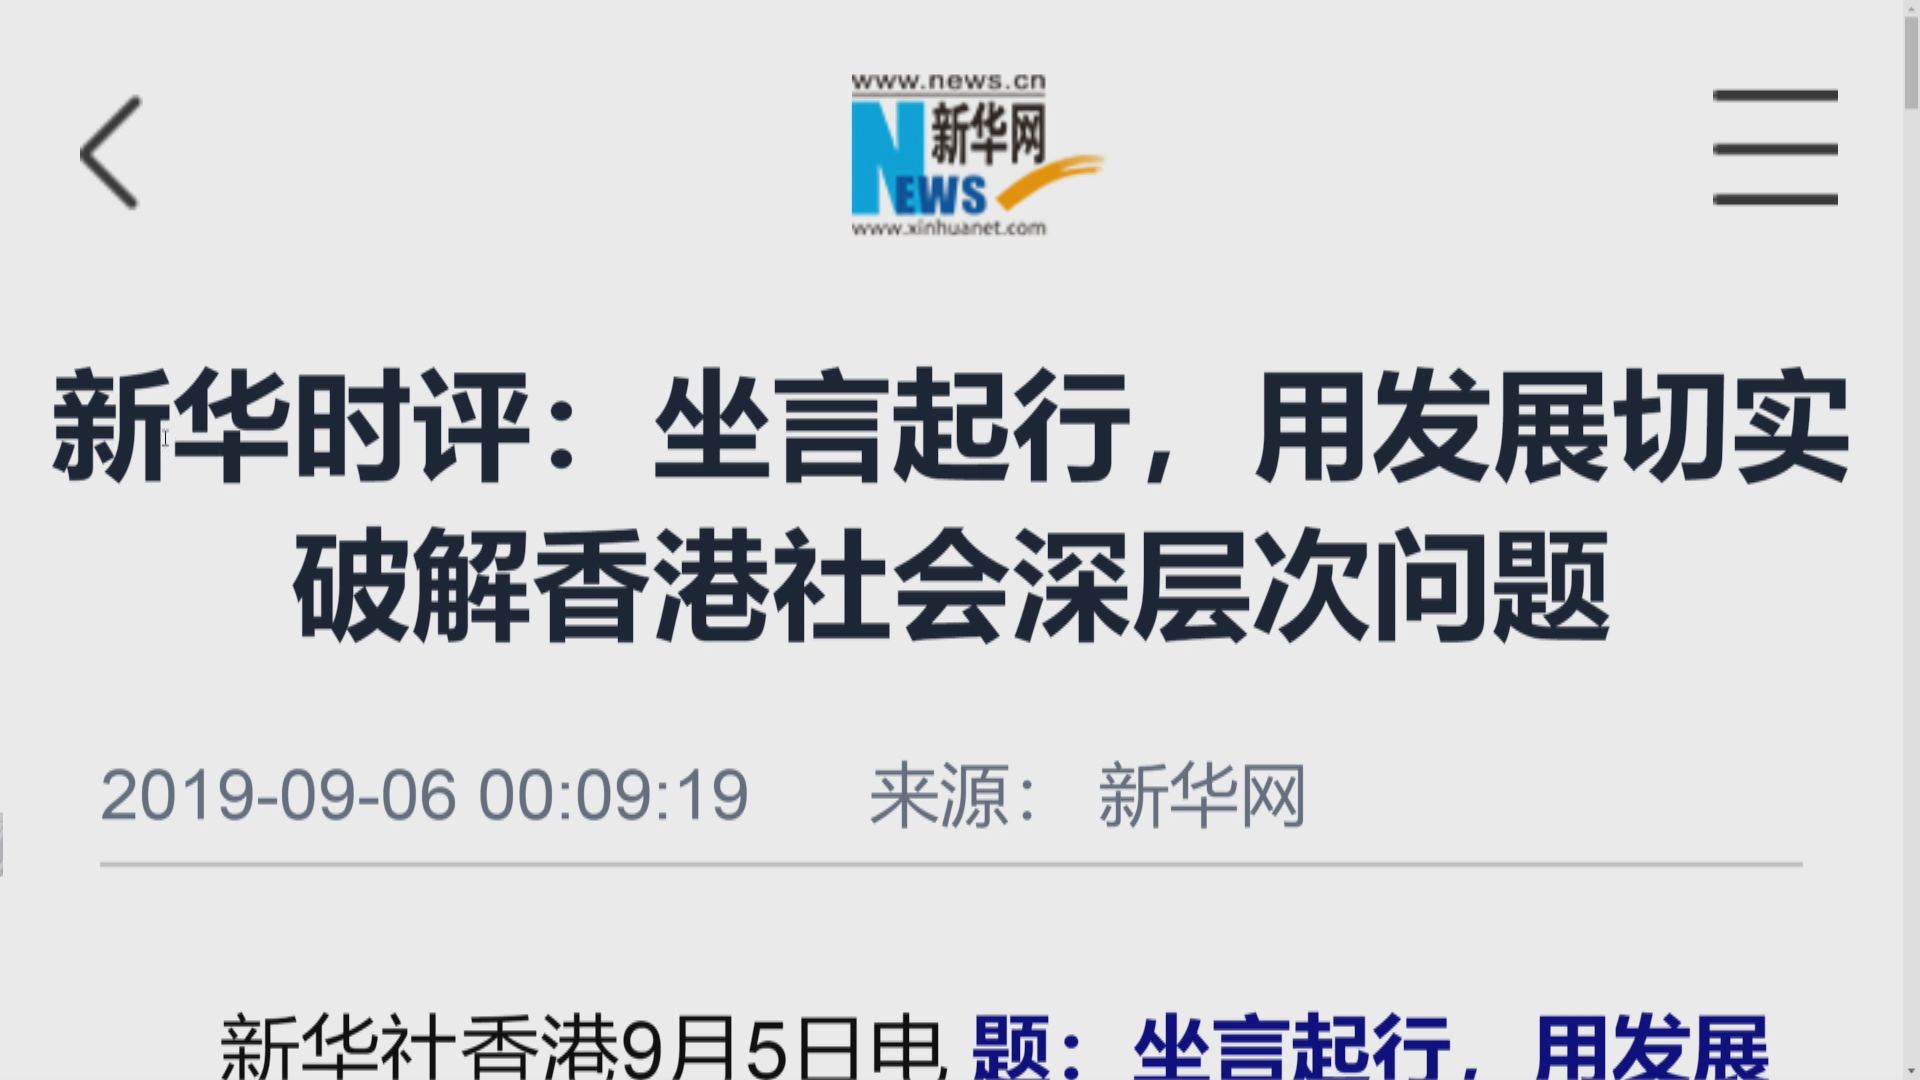 官媒發文籲香港恢復發展民生